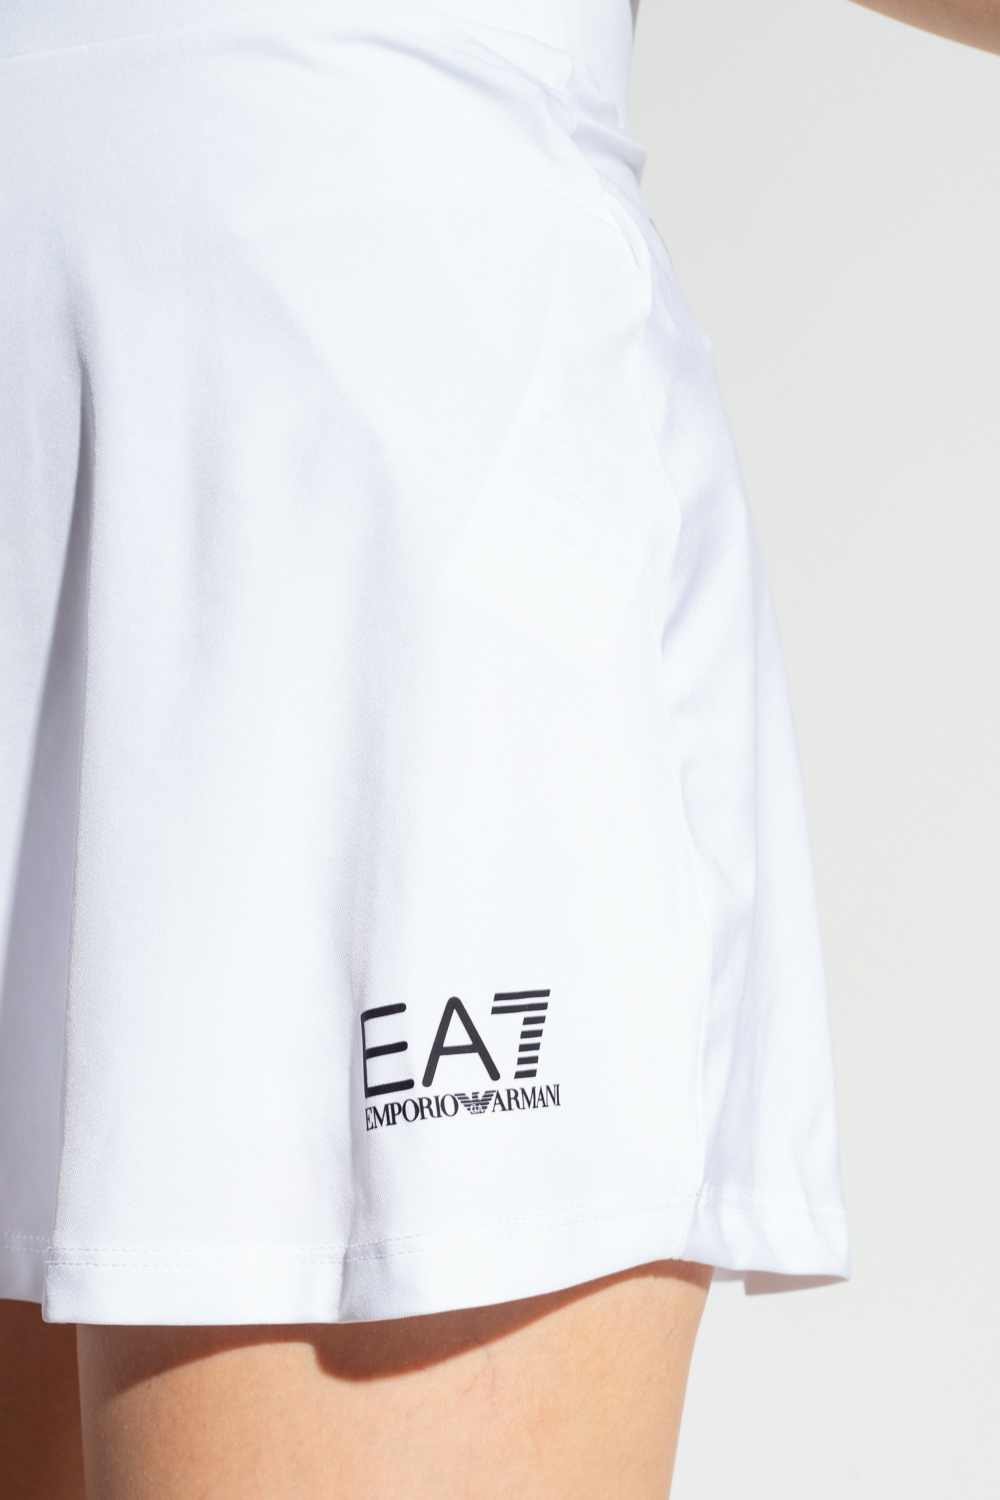 EA7 Emporio Kontrastfarbe armani Tennis skirt